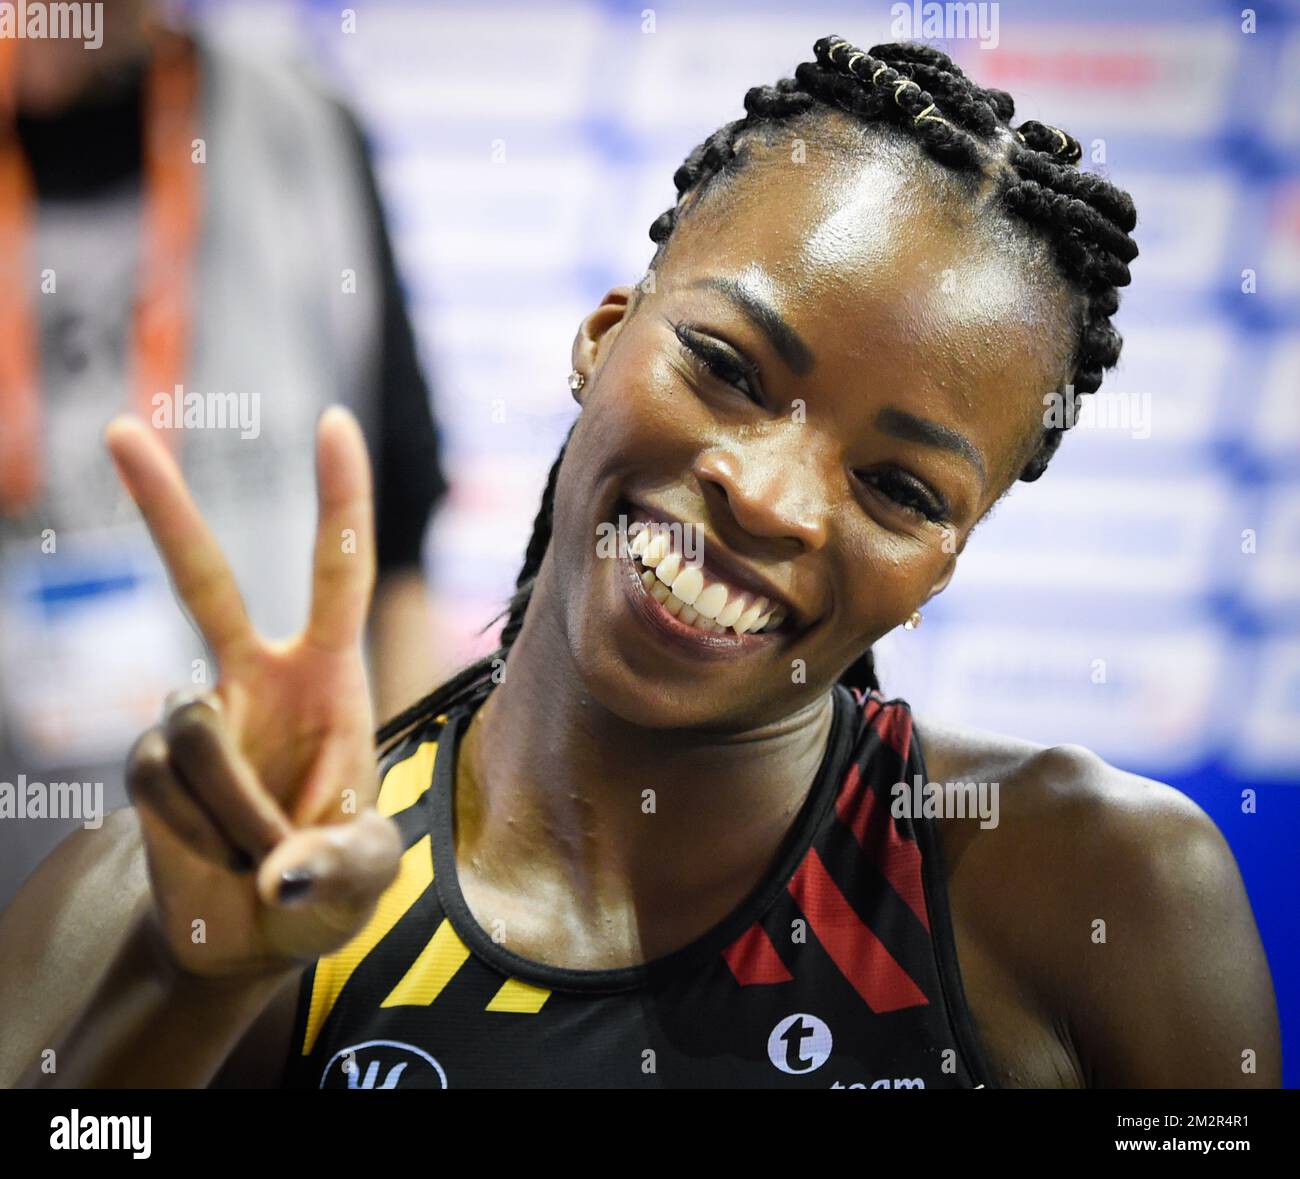 Die belgische Cynthia Bolingo Mbongo feiert nach dem Halbfinale des Frauenwettbewerbs 400m am ersten Tag der europäischen Leichtathletik-Hallenmeisterschaft in Glasgow, Schottland, am Freitag, den 01. März 2019. Die Meisterschaften finden vom 1. Bis 3. März statt. BELGA FOTO BENOIT DOPPPAGNE Stockfoto